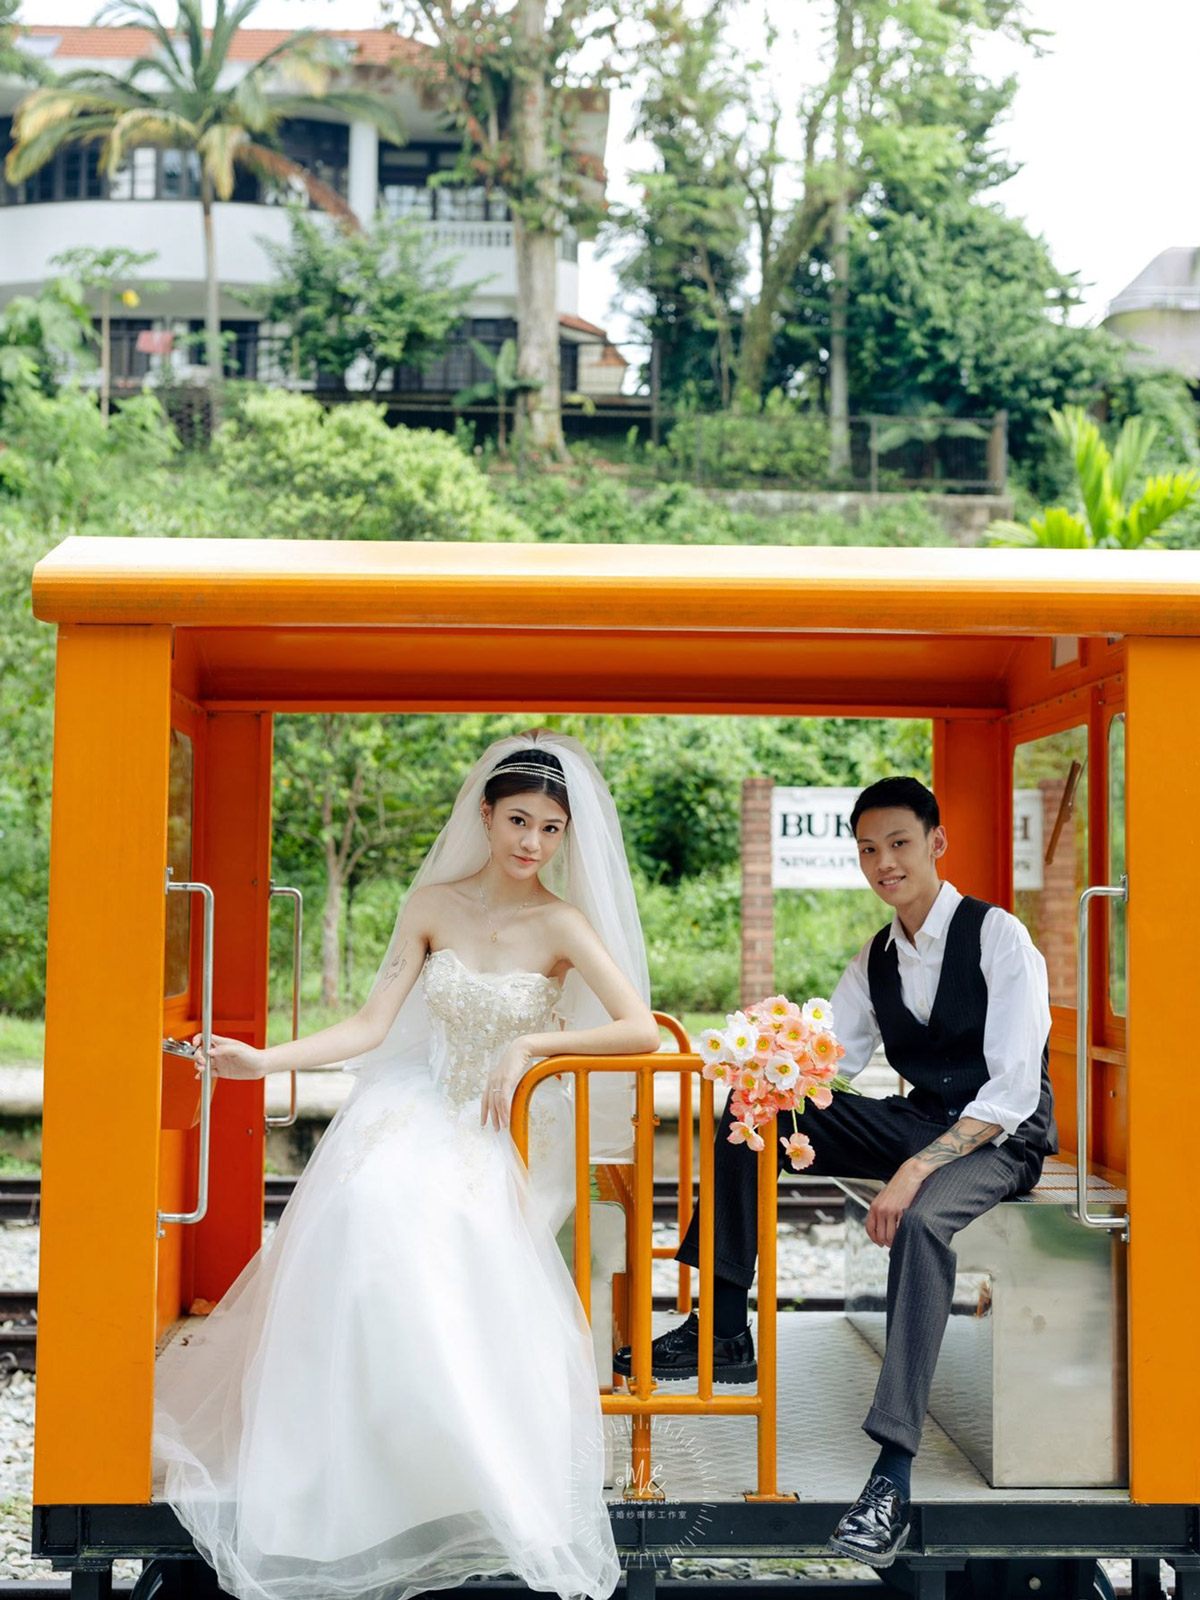 Pre-wedding Shoots | Outdoor Wedding Photos